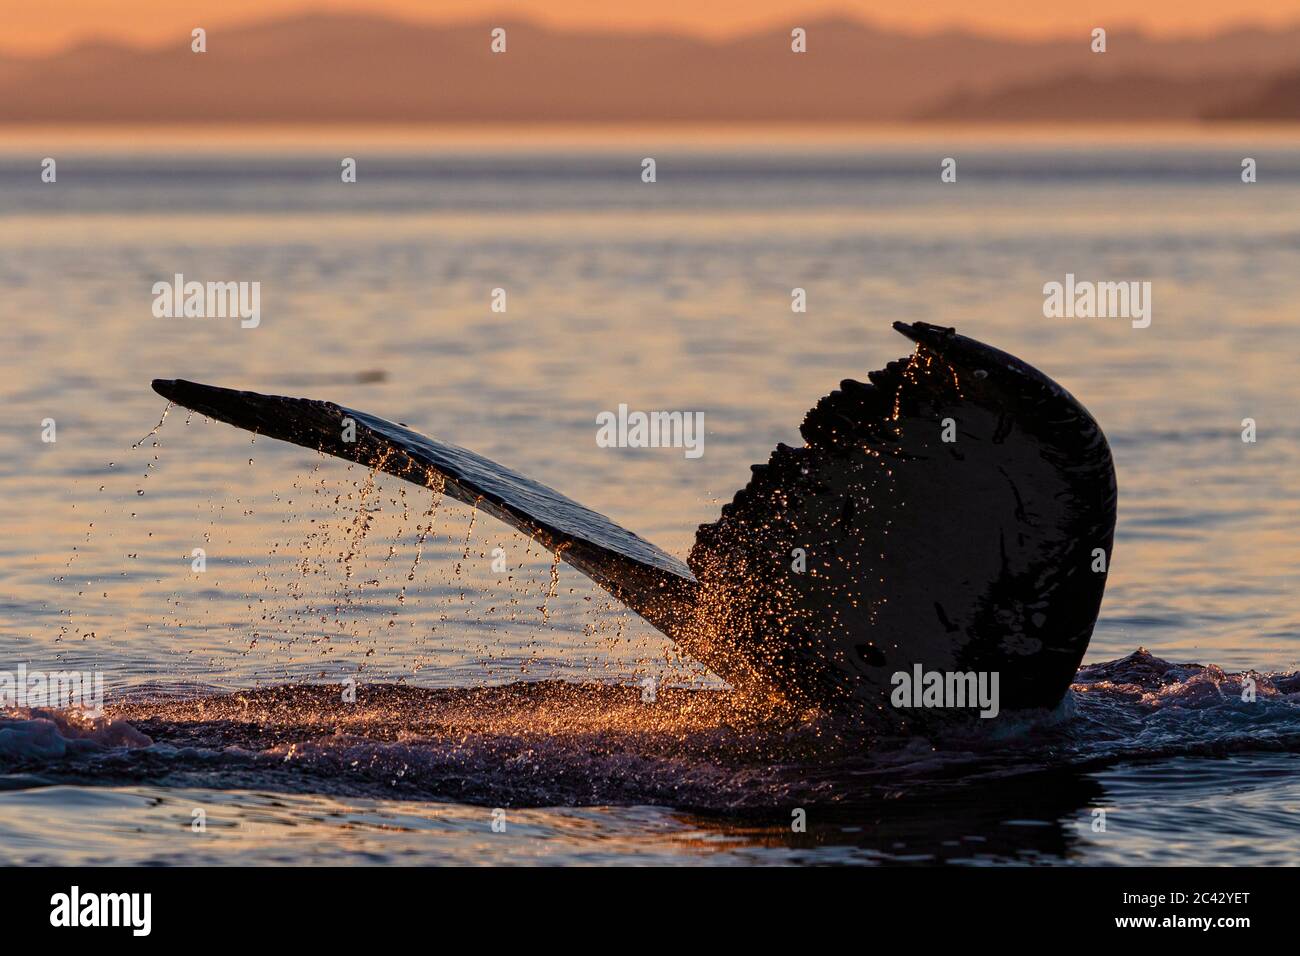 El agua gotea de la ballena jorobada durante la puesta de sol en el archipiélago de Broughton, Territorio de las primeras Naciones, Columbia Británica, Canadá Foto de stock